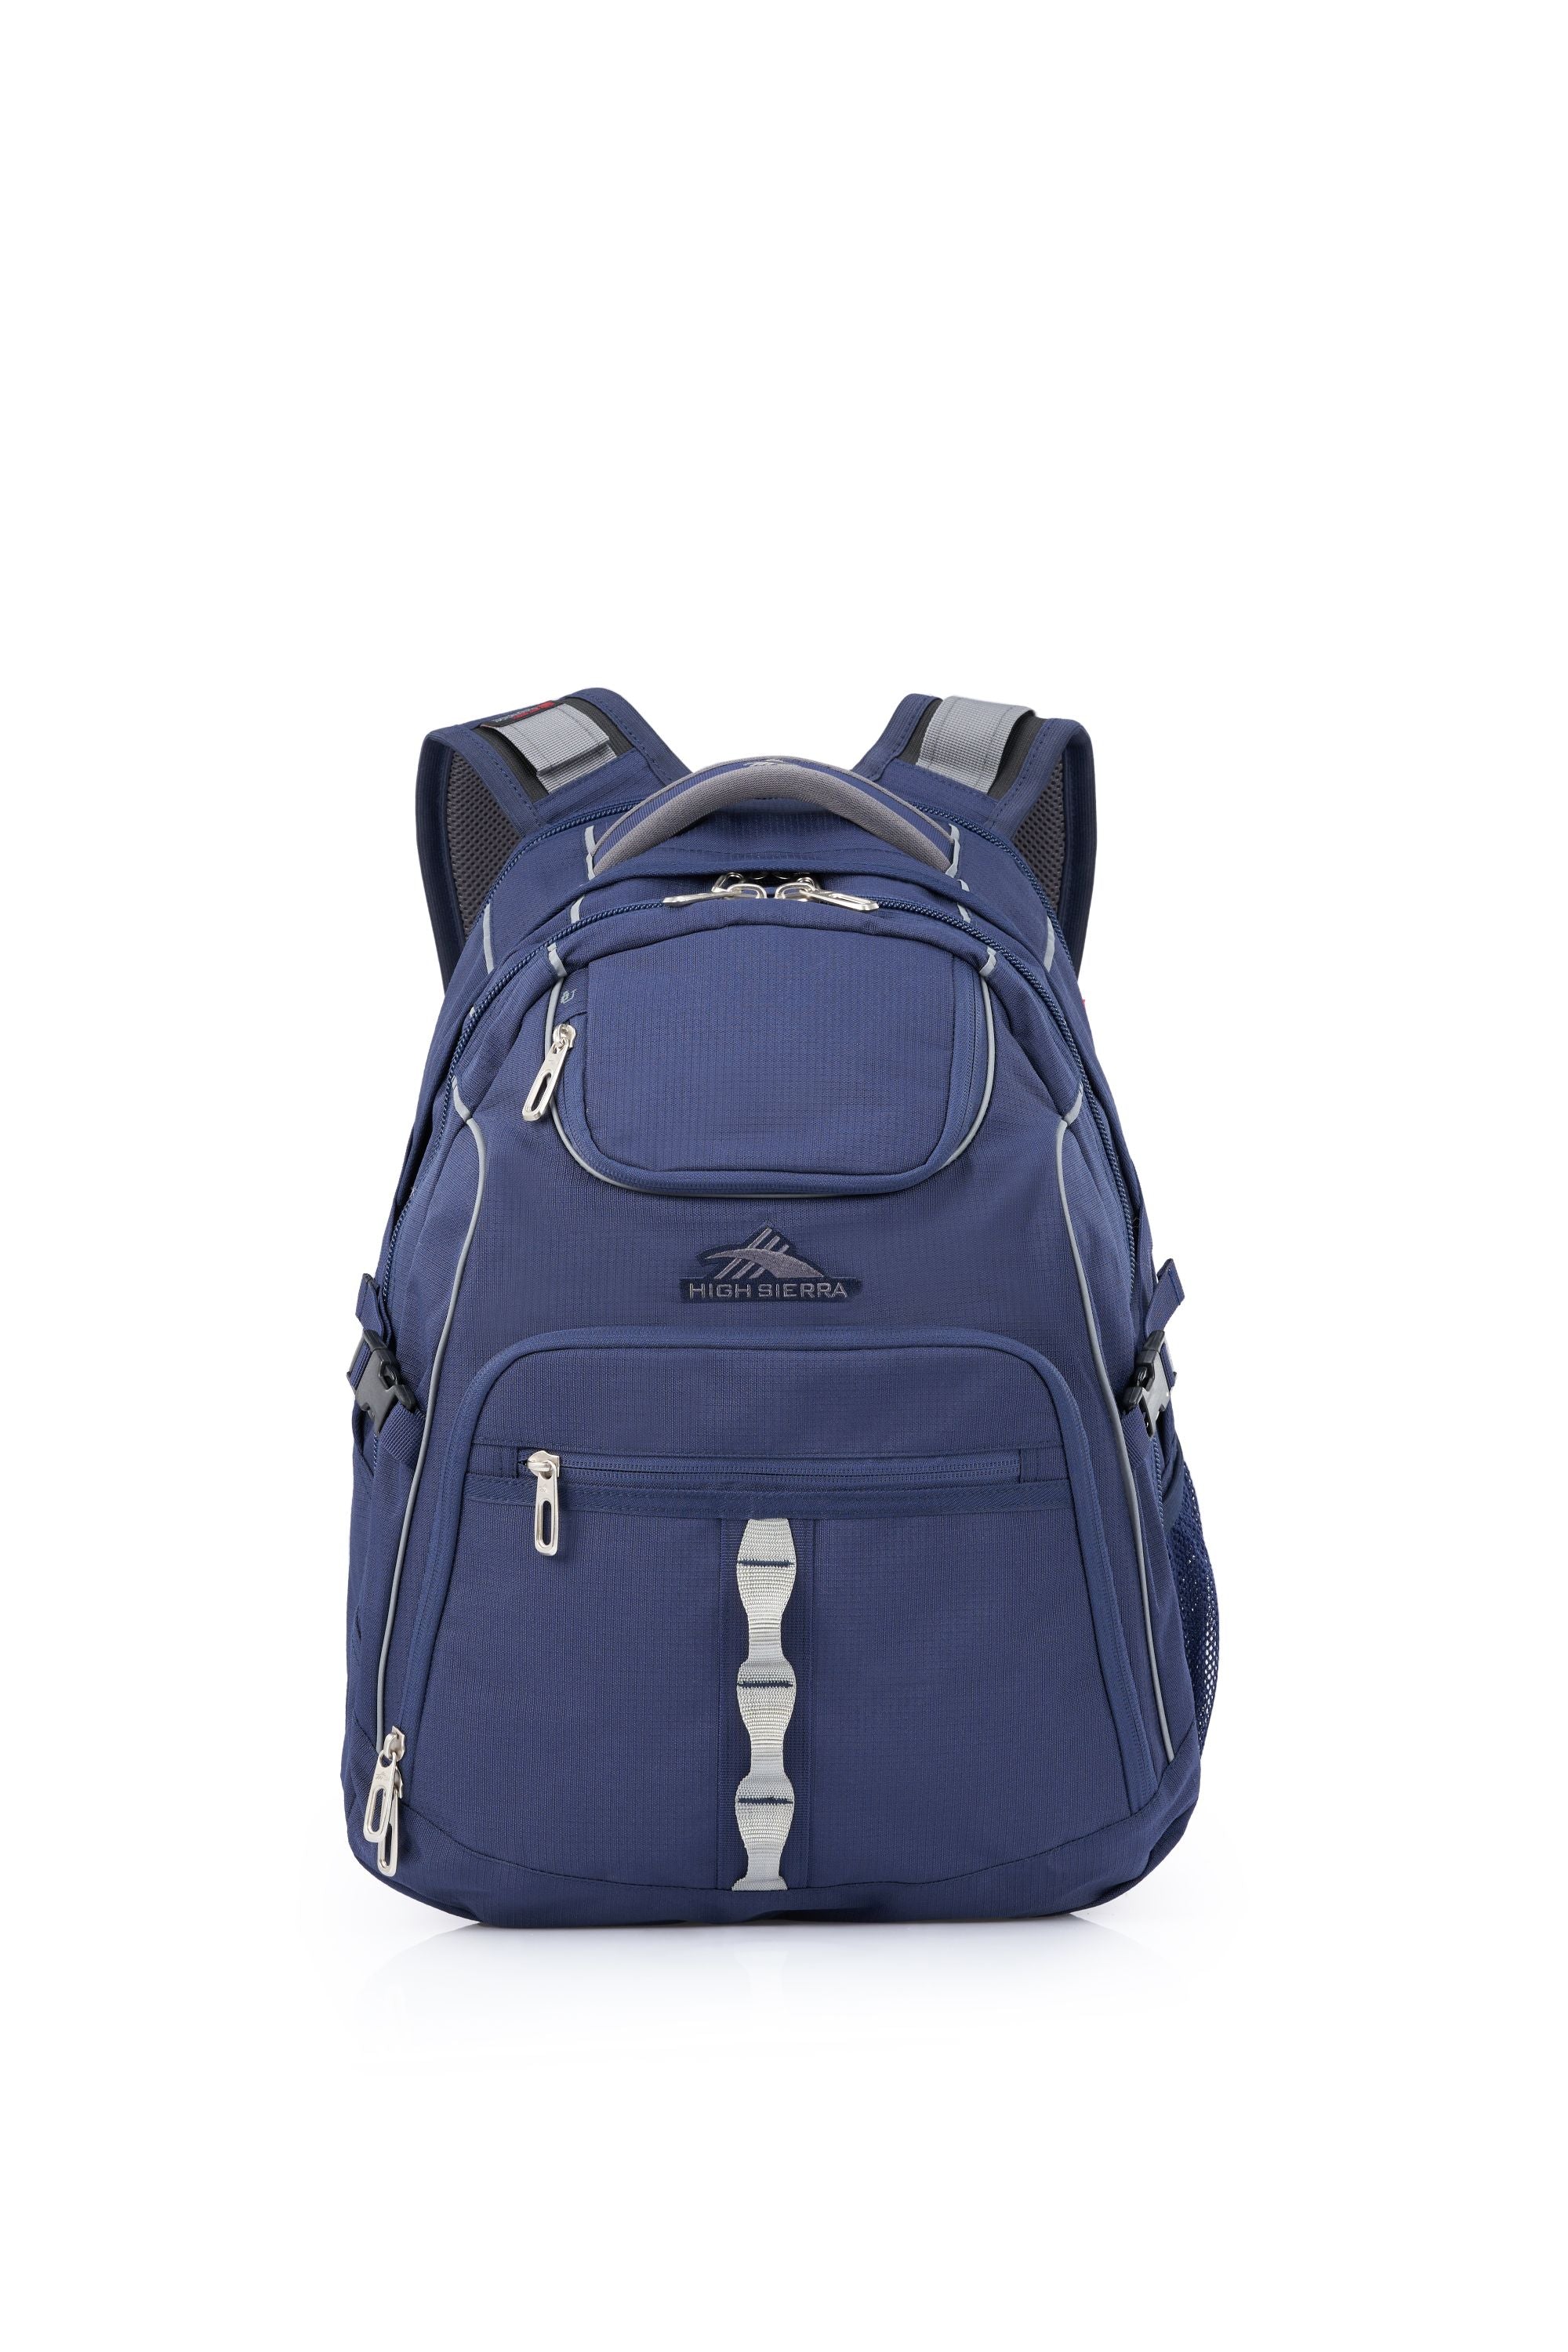 High Sierra - Access 3.0 Eco Backpack - Marine Blue-2